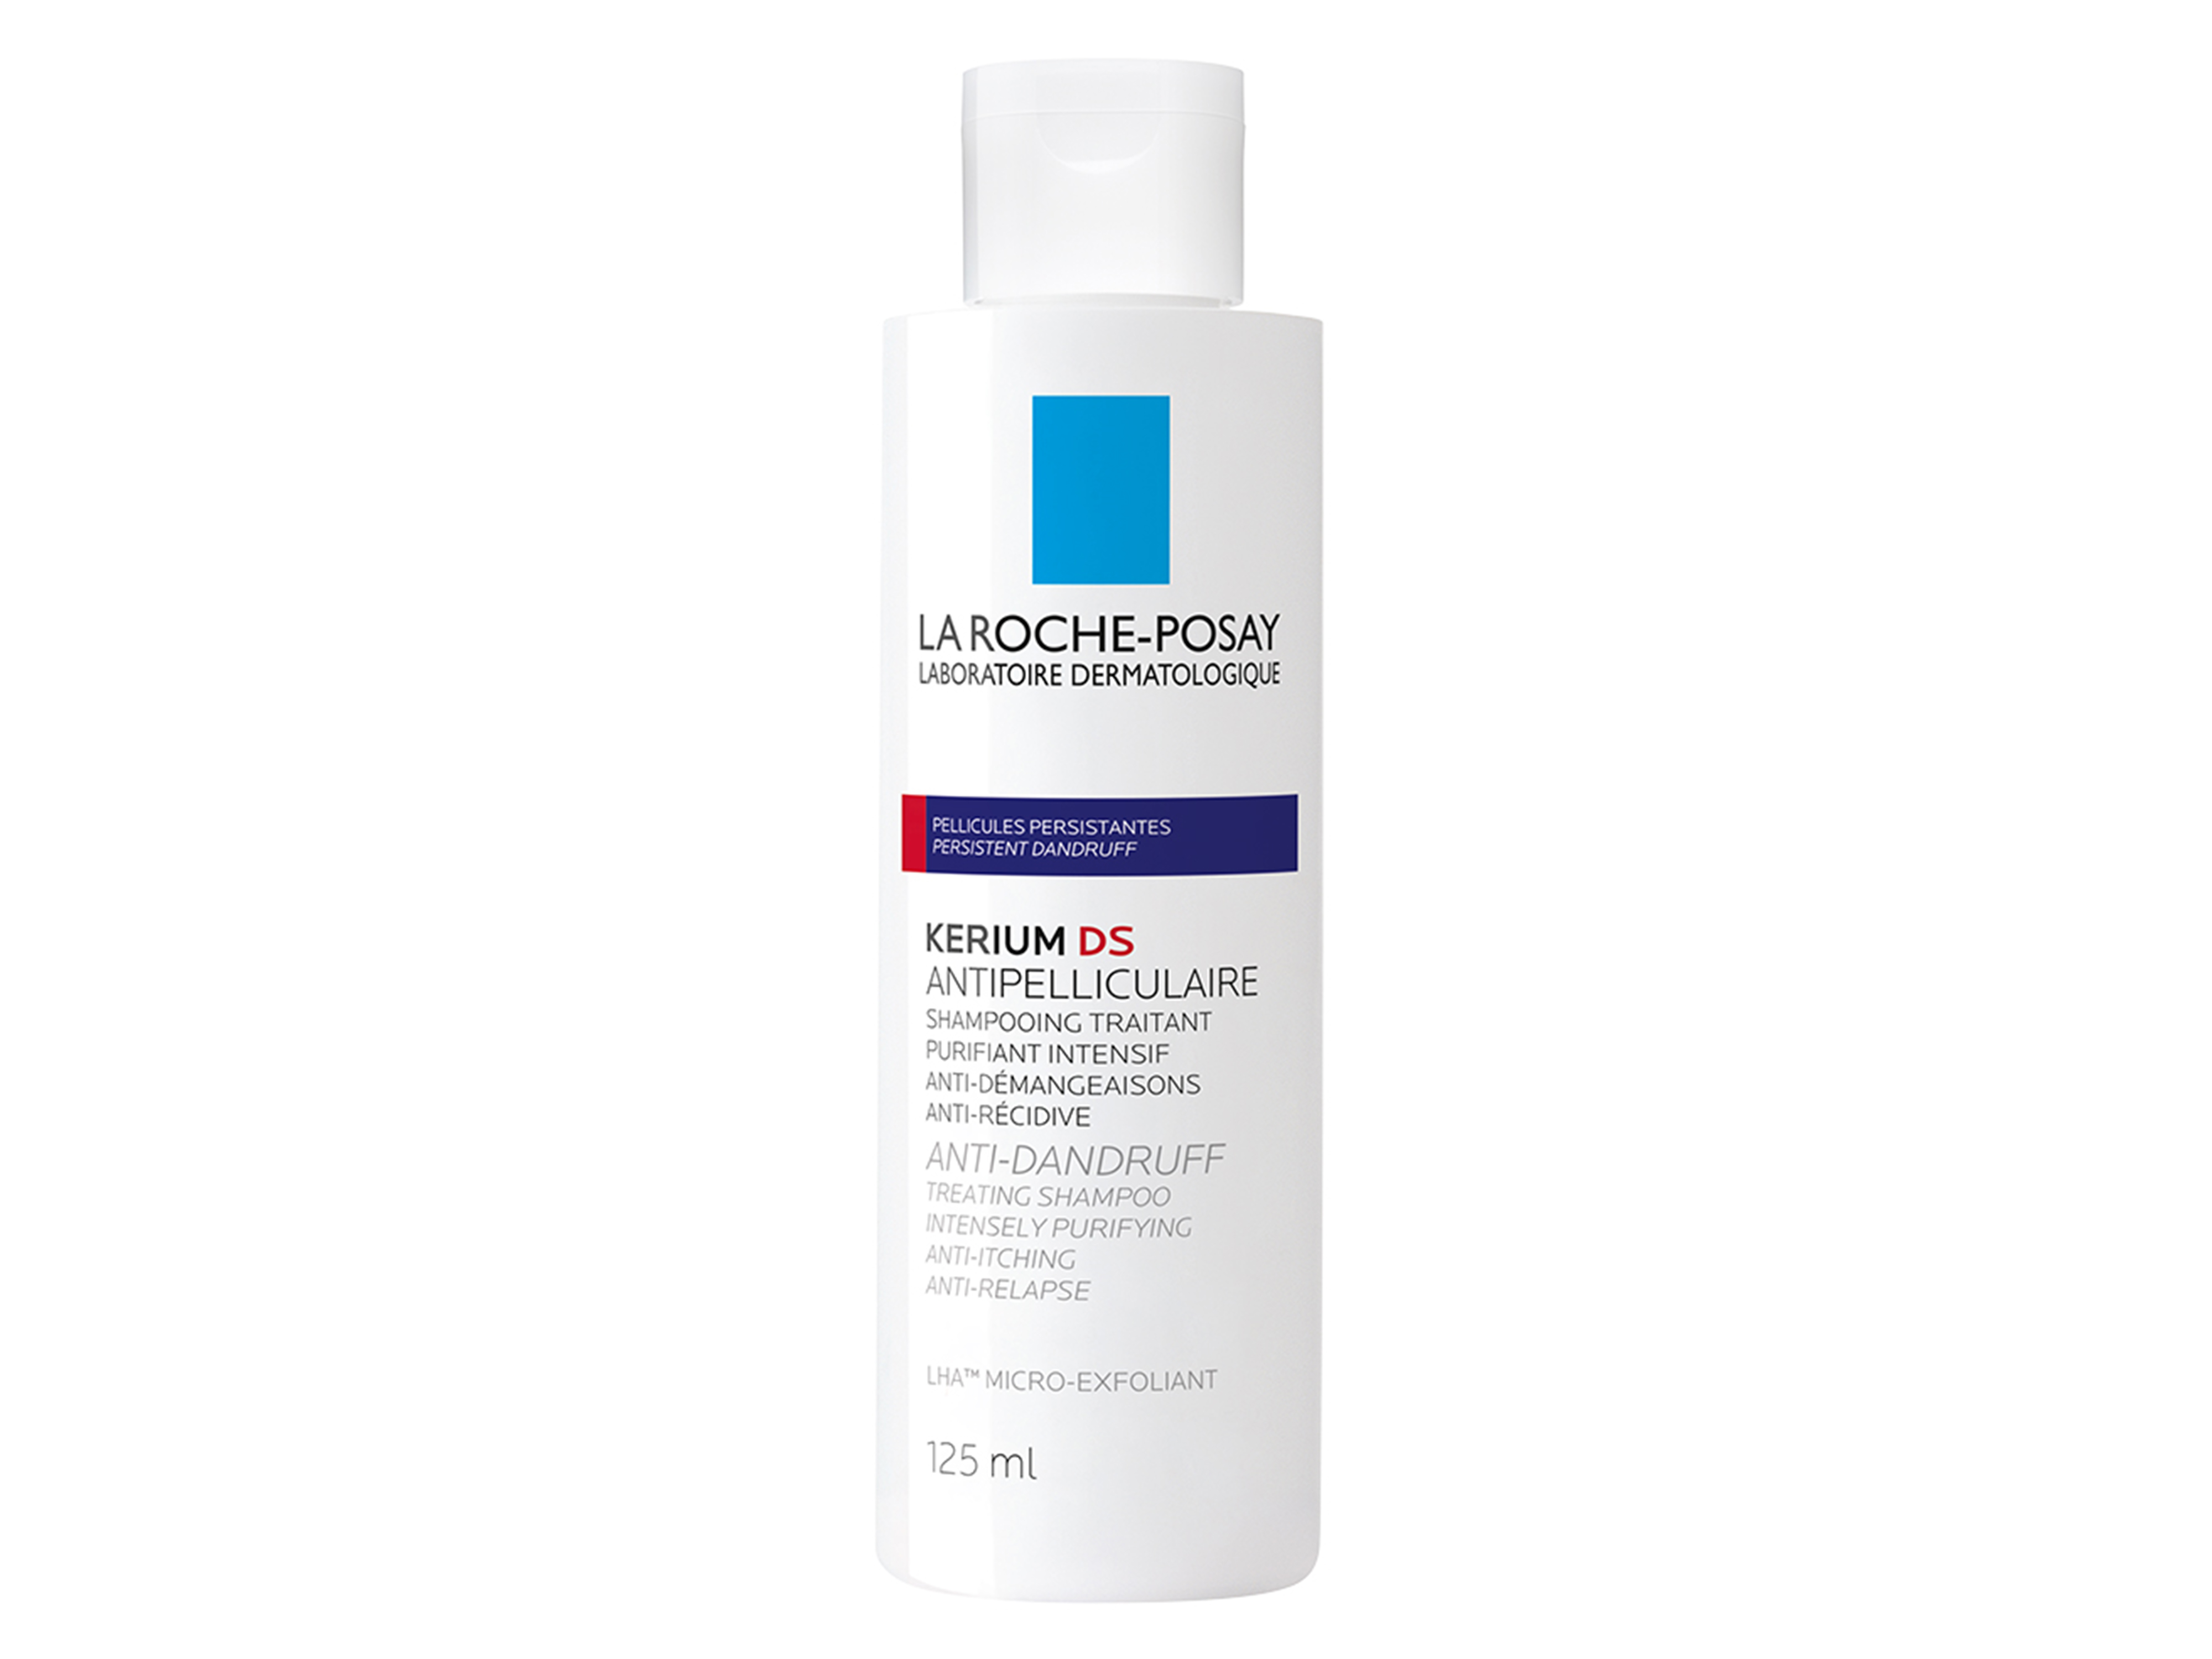 La Roche-Posay Kerium DS Anti-Dandruff Shampoo, 125 ml